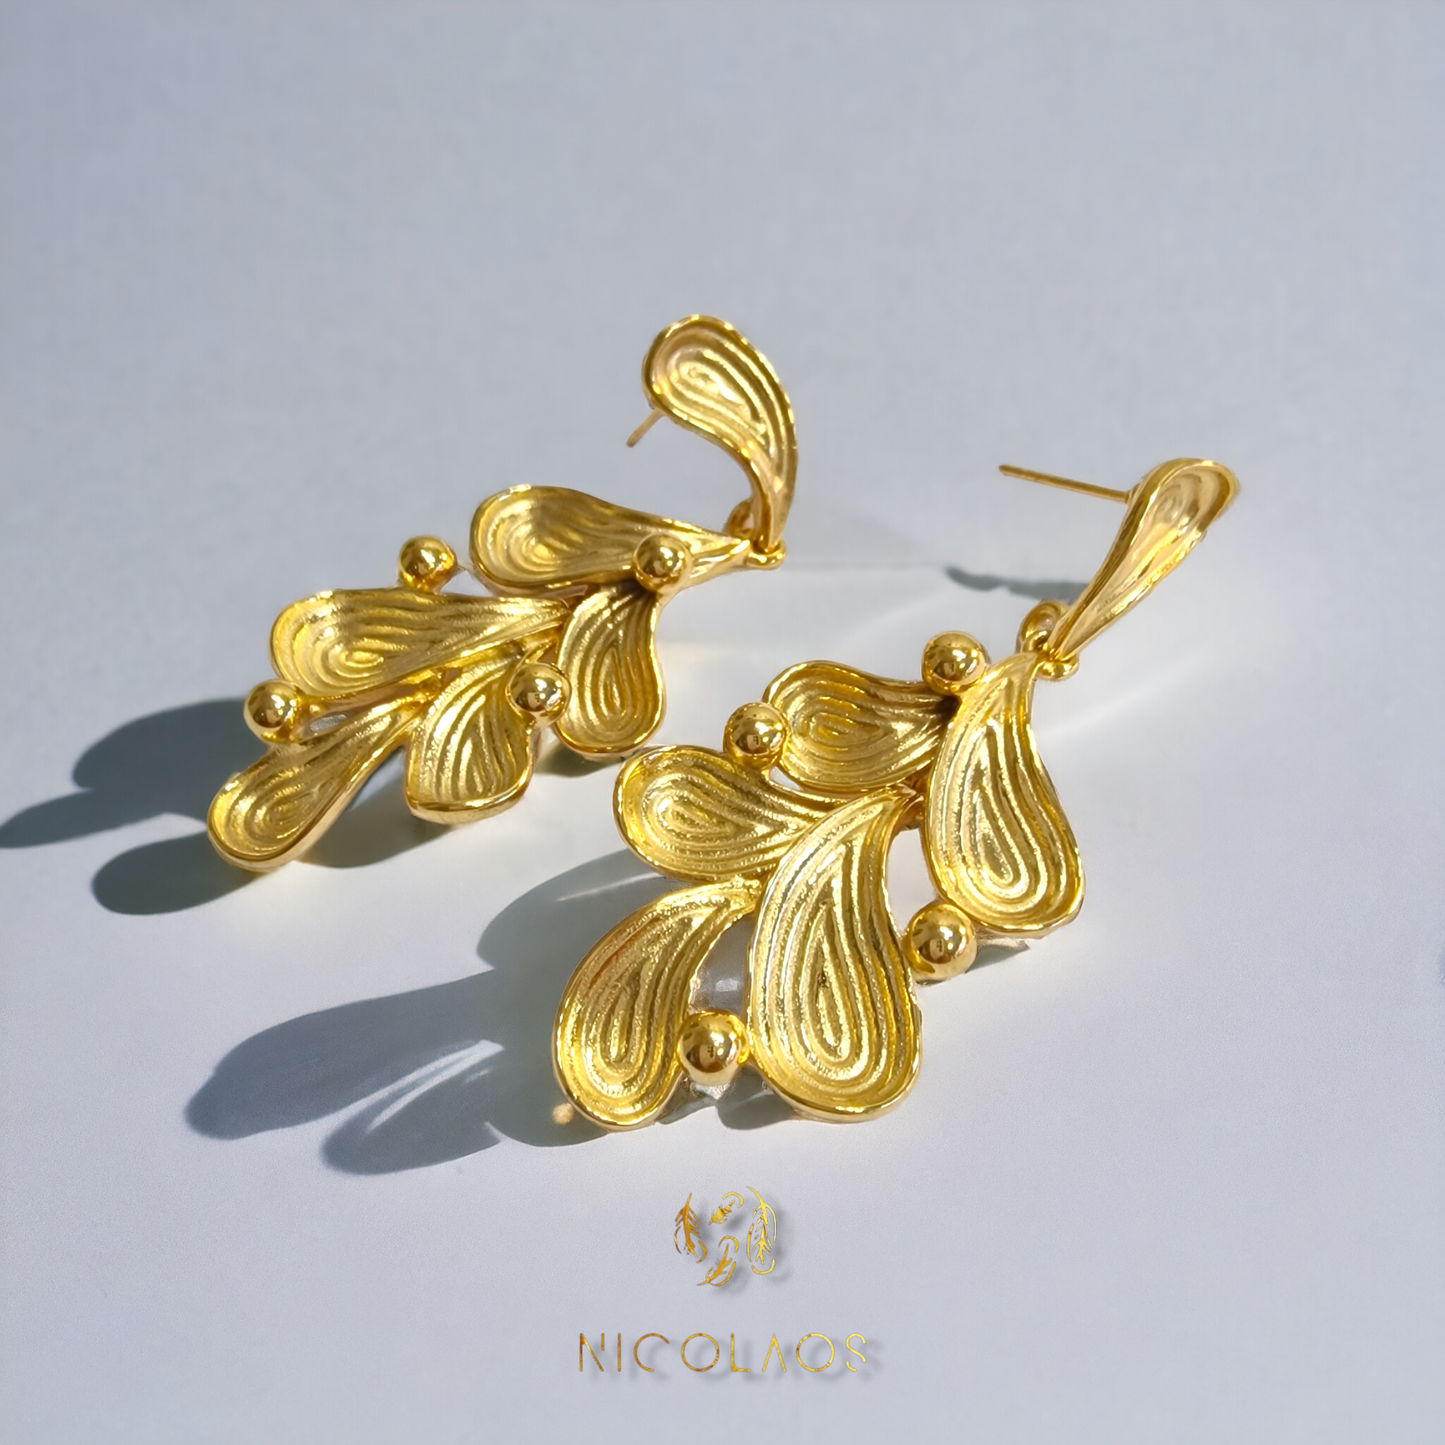 Σκουλαρίκια 'Aleana' από χρυσό ανοξείδωτο ατσάλι με ανάγλυφο φινίρισμα